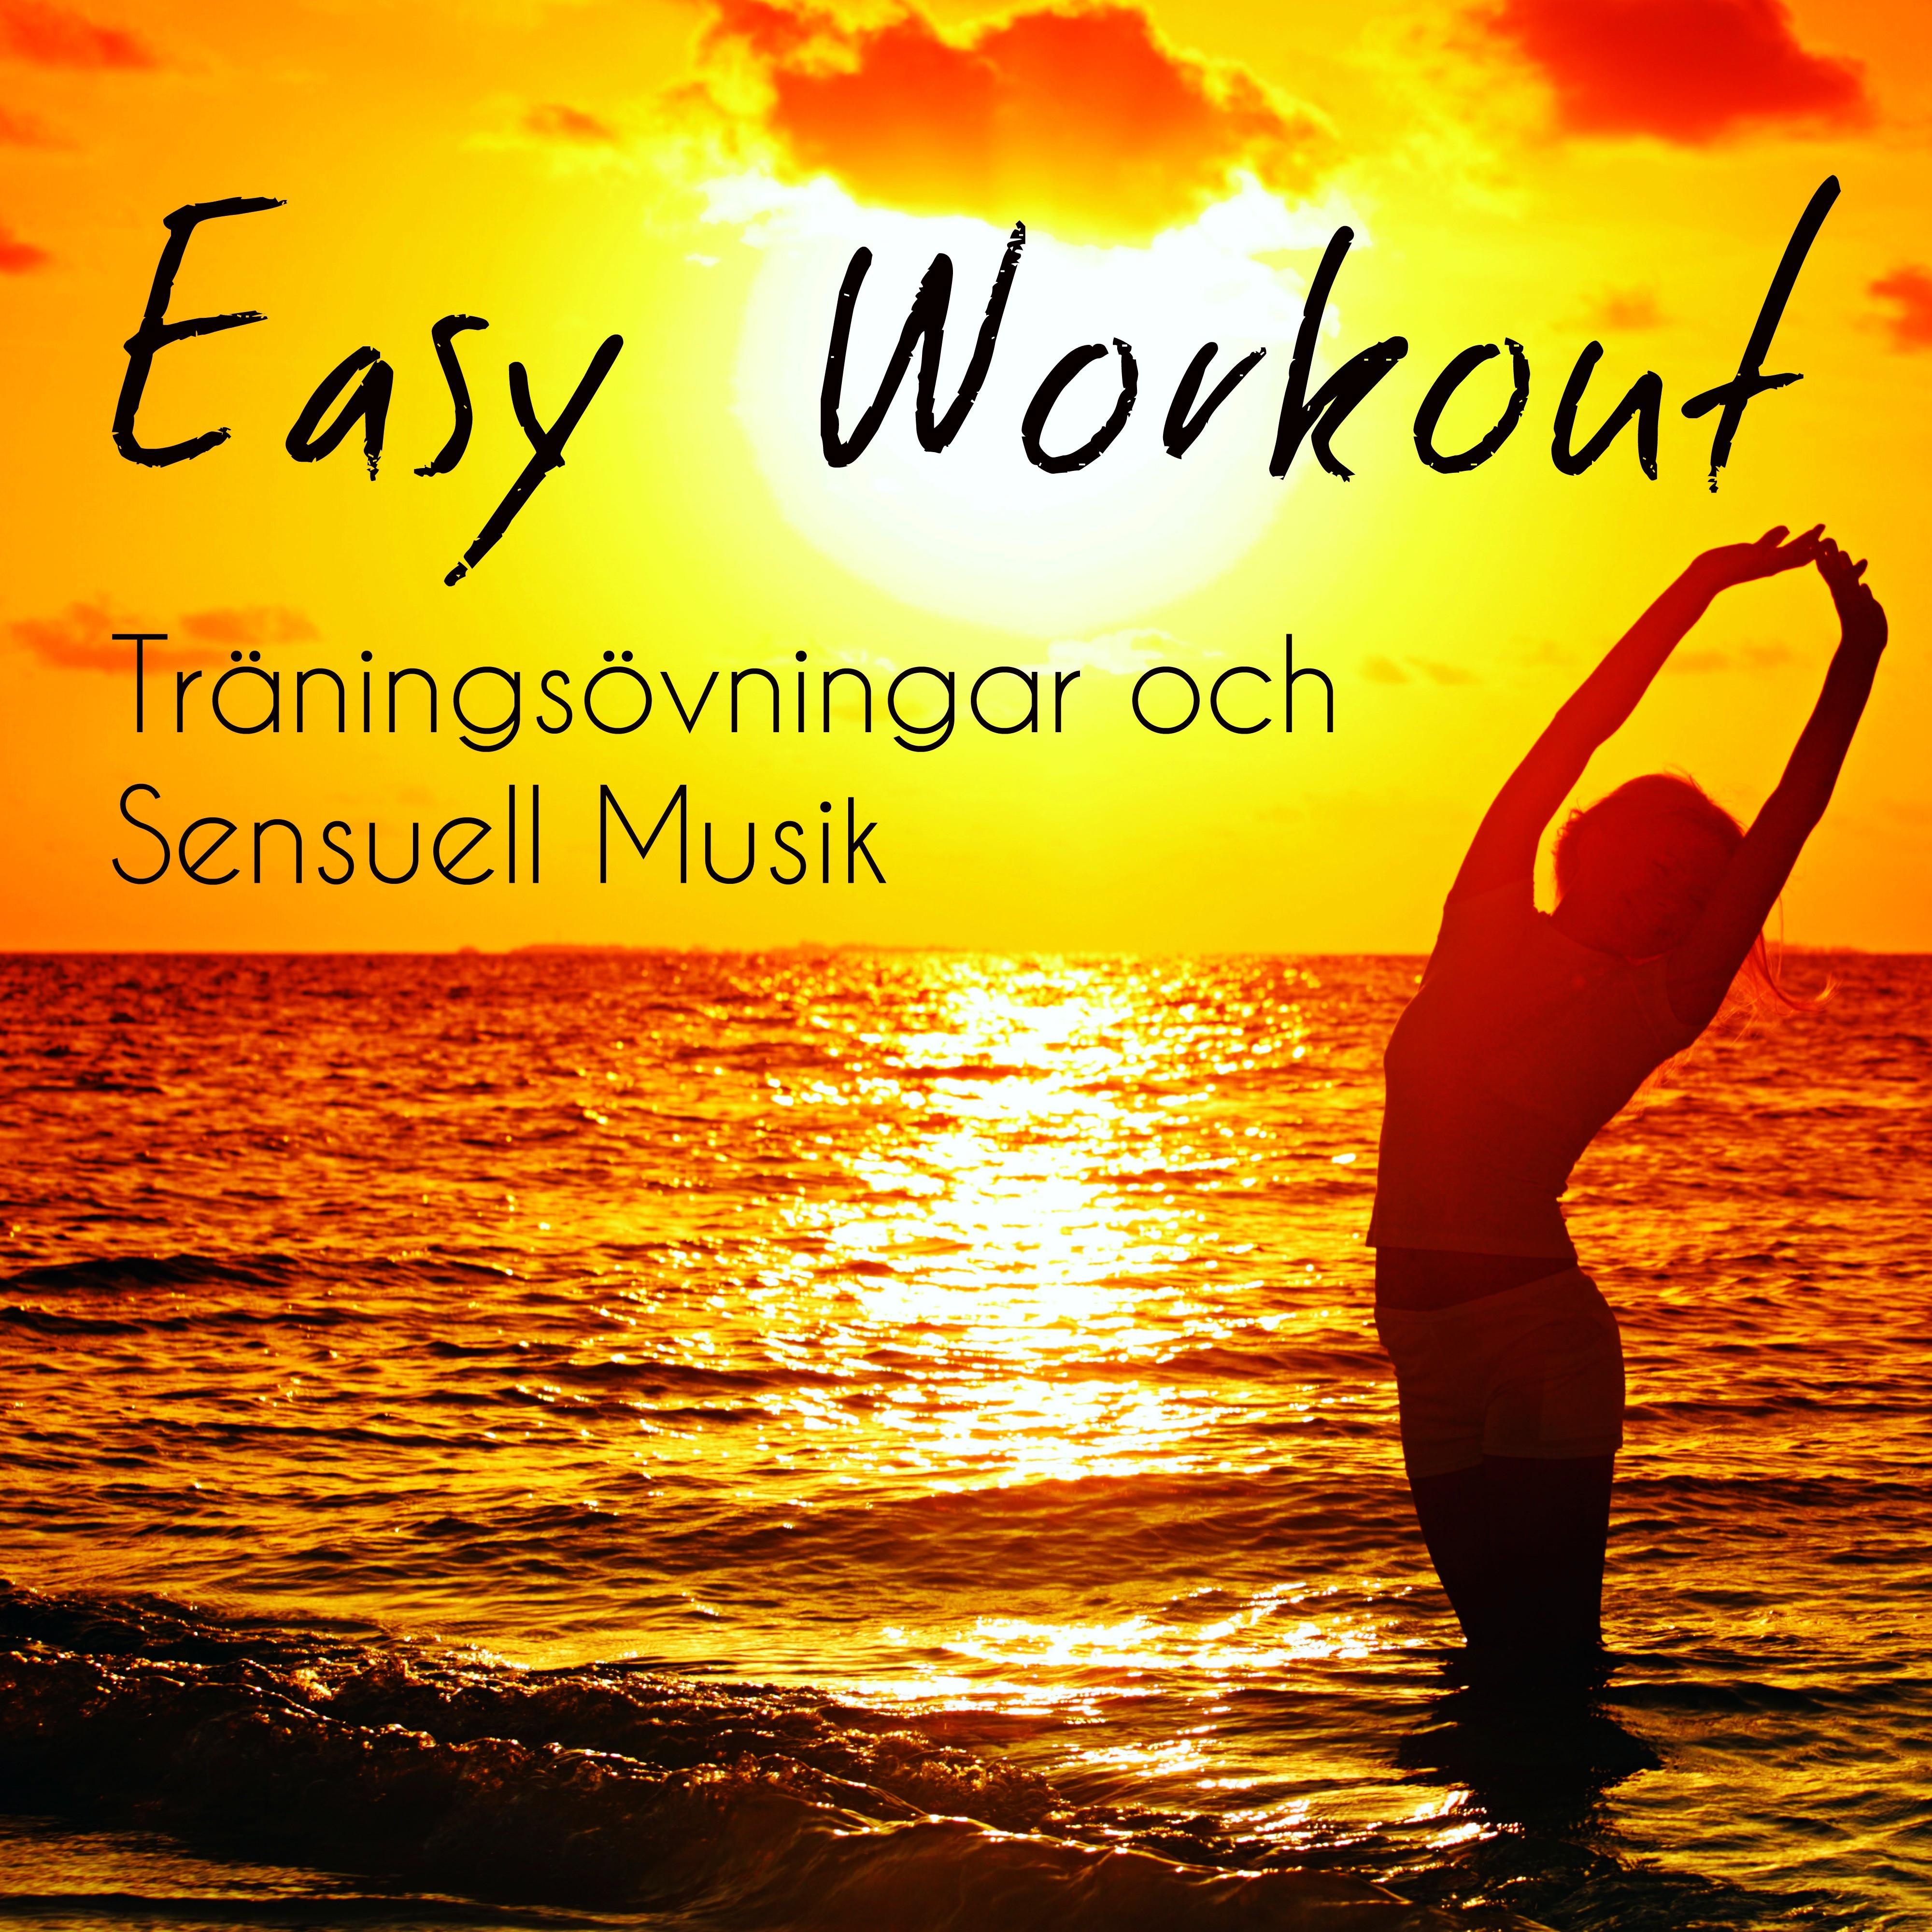 Easy Workout - Träningsövningar och Sensuell Musik med Lounge Chillout Electro Instrumental Ljud